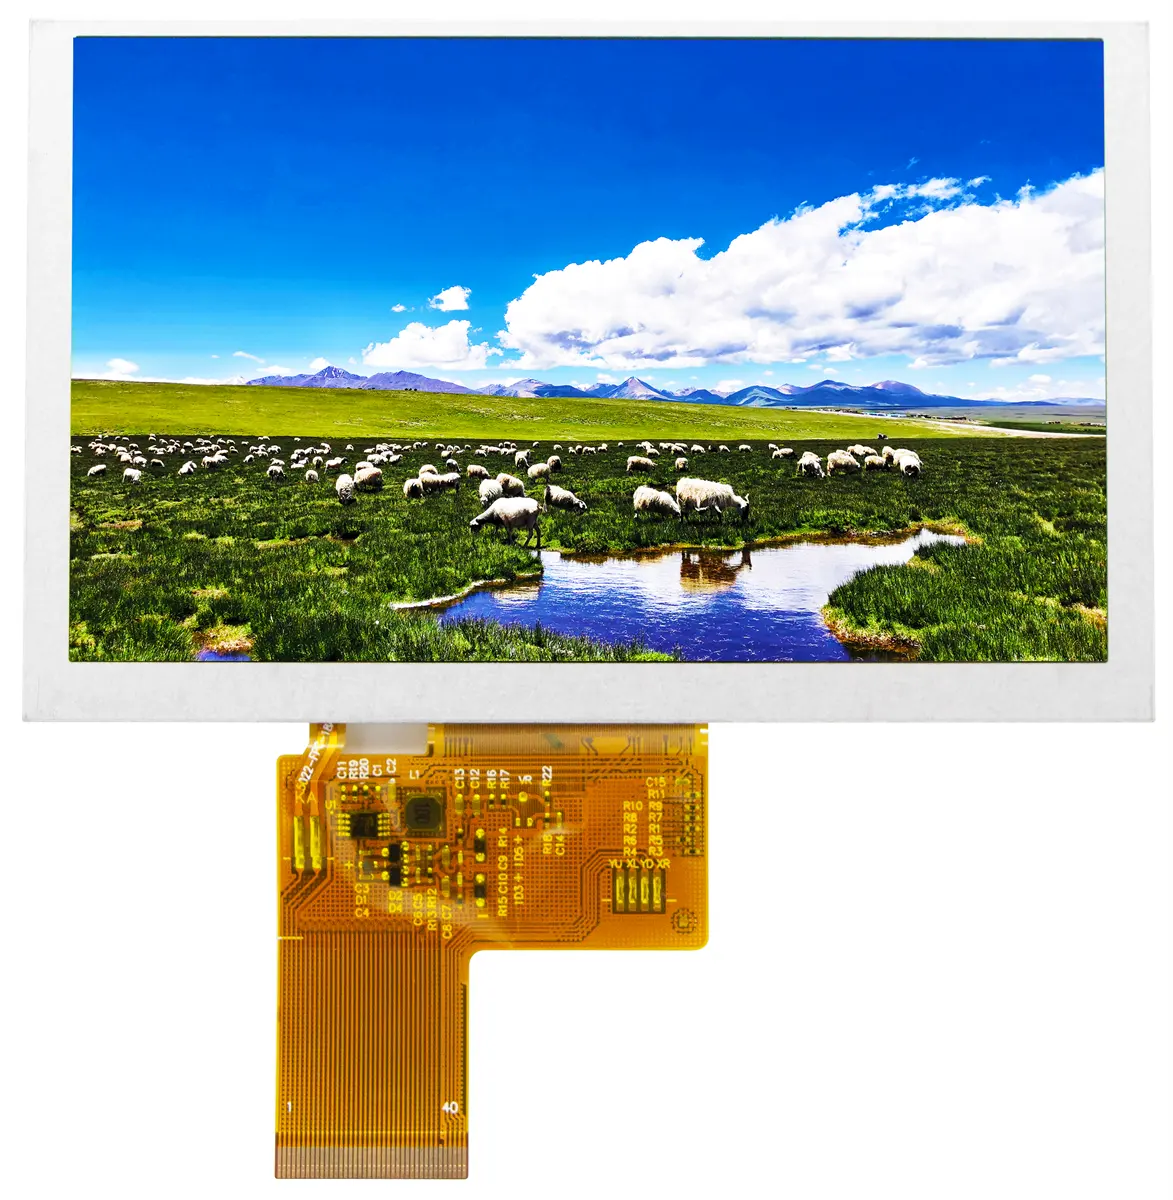 شاوكسين LCD مصنعين 5 بوصة TFT LCD وحدة 800x480 عالية الدقة جميع زوايا المشاهدة TFT LCD